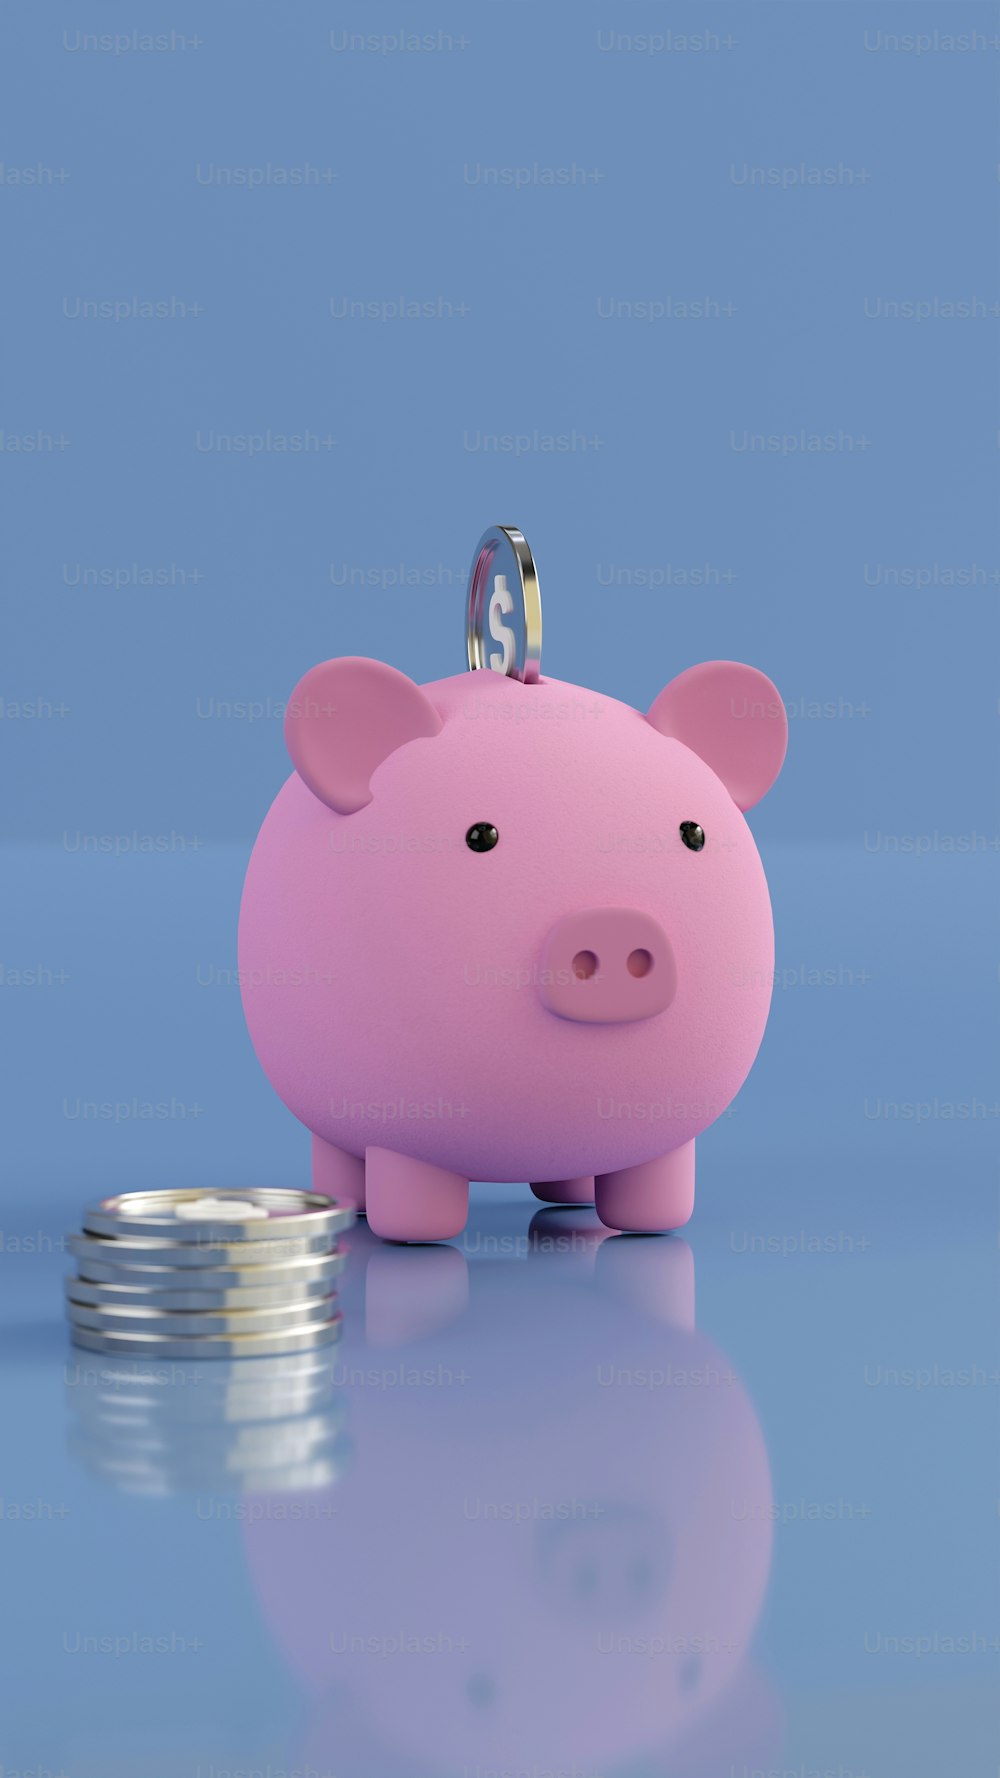 Un salvadanaio rosa seduto accanto a una pila di monete